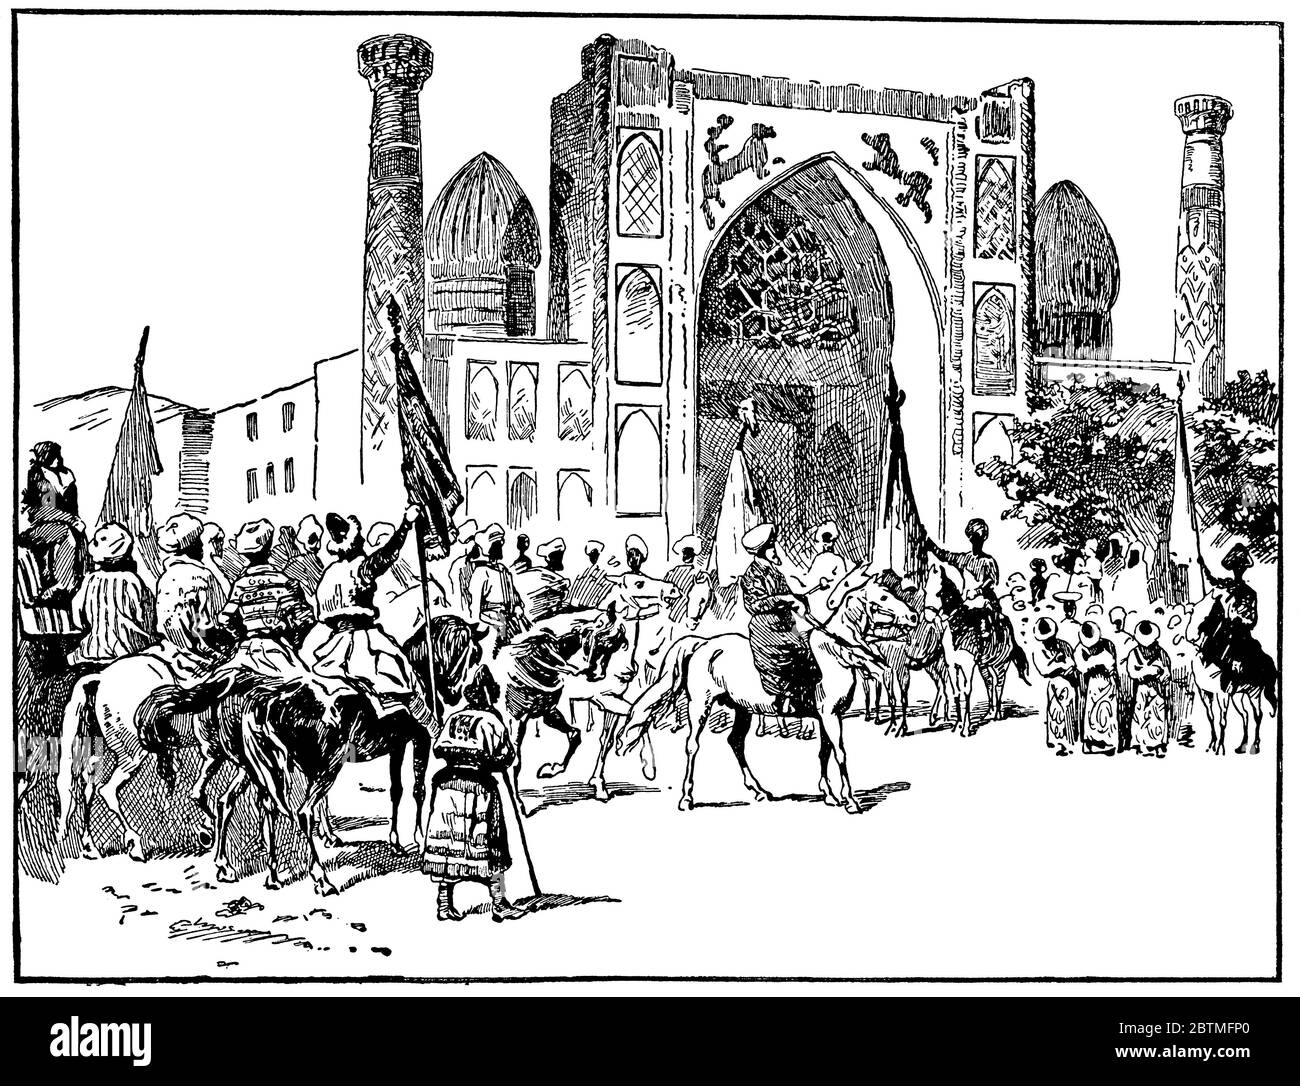 Entrée d'Emir à Samarkand. Illustration du XIXe siècle. Fond blanc. Banque D'Images